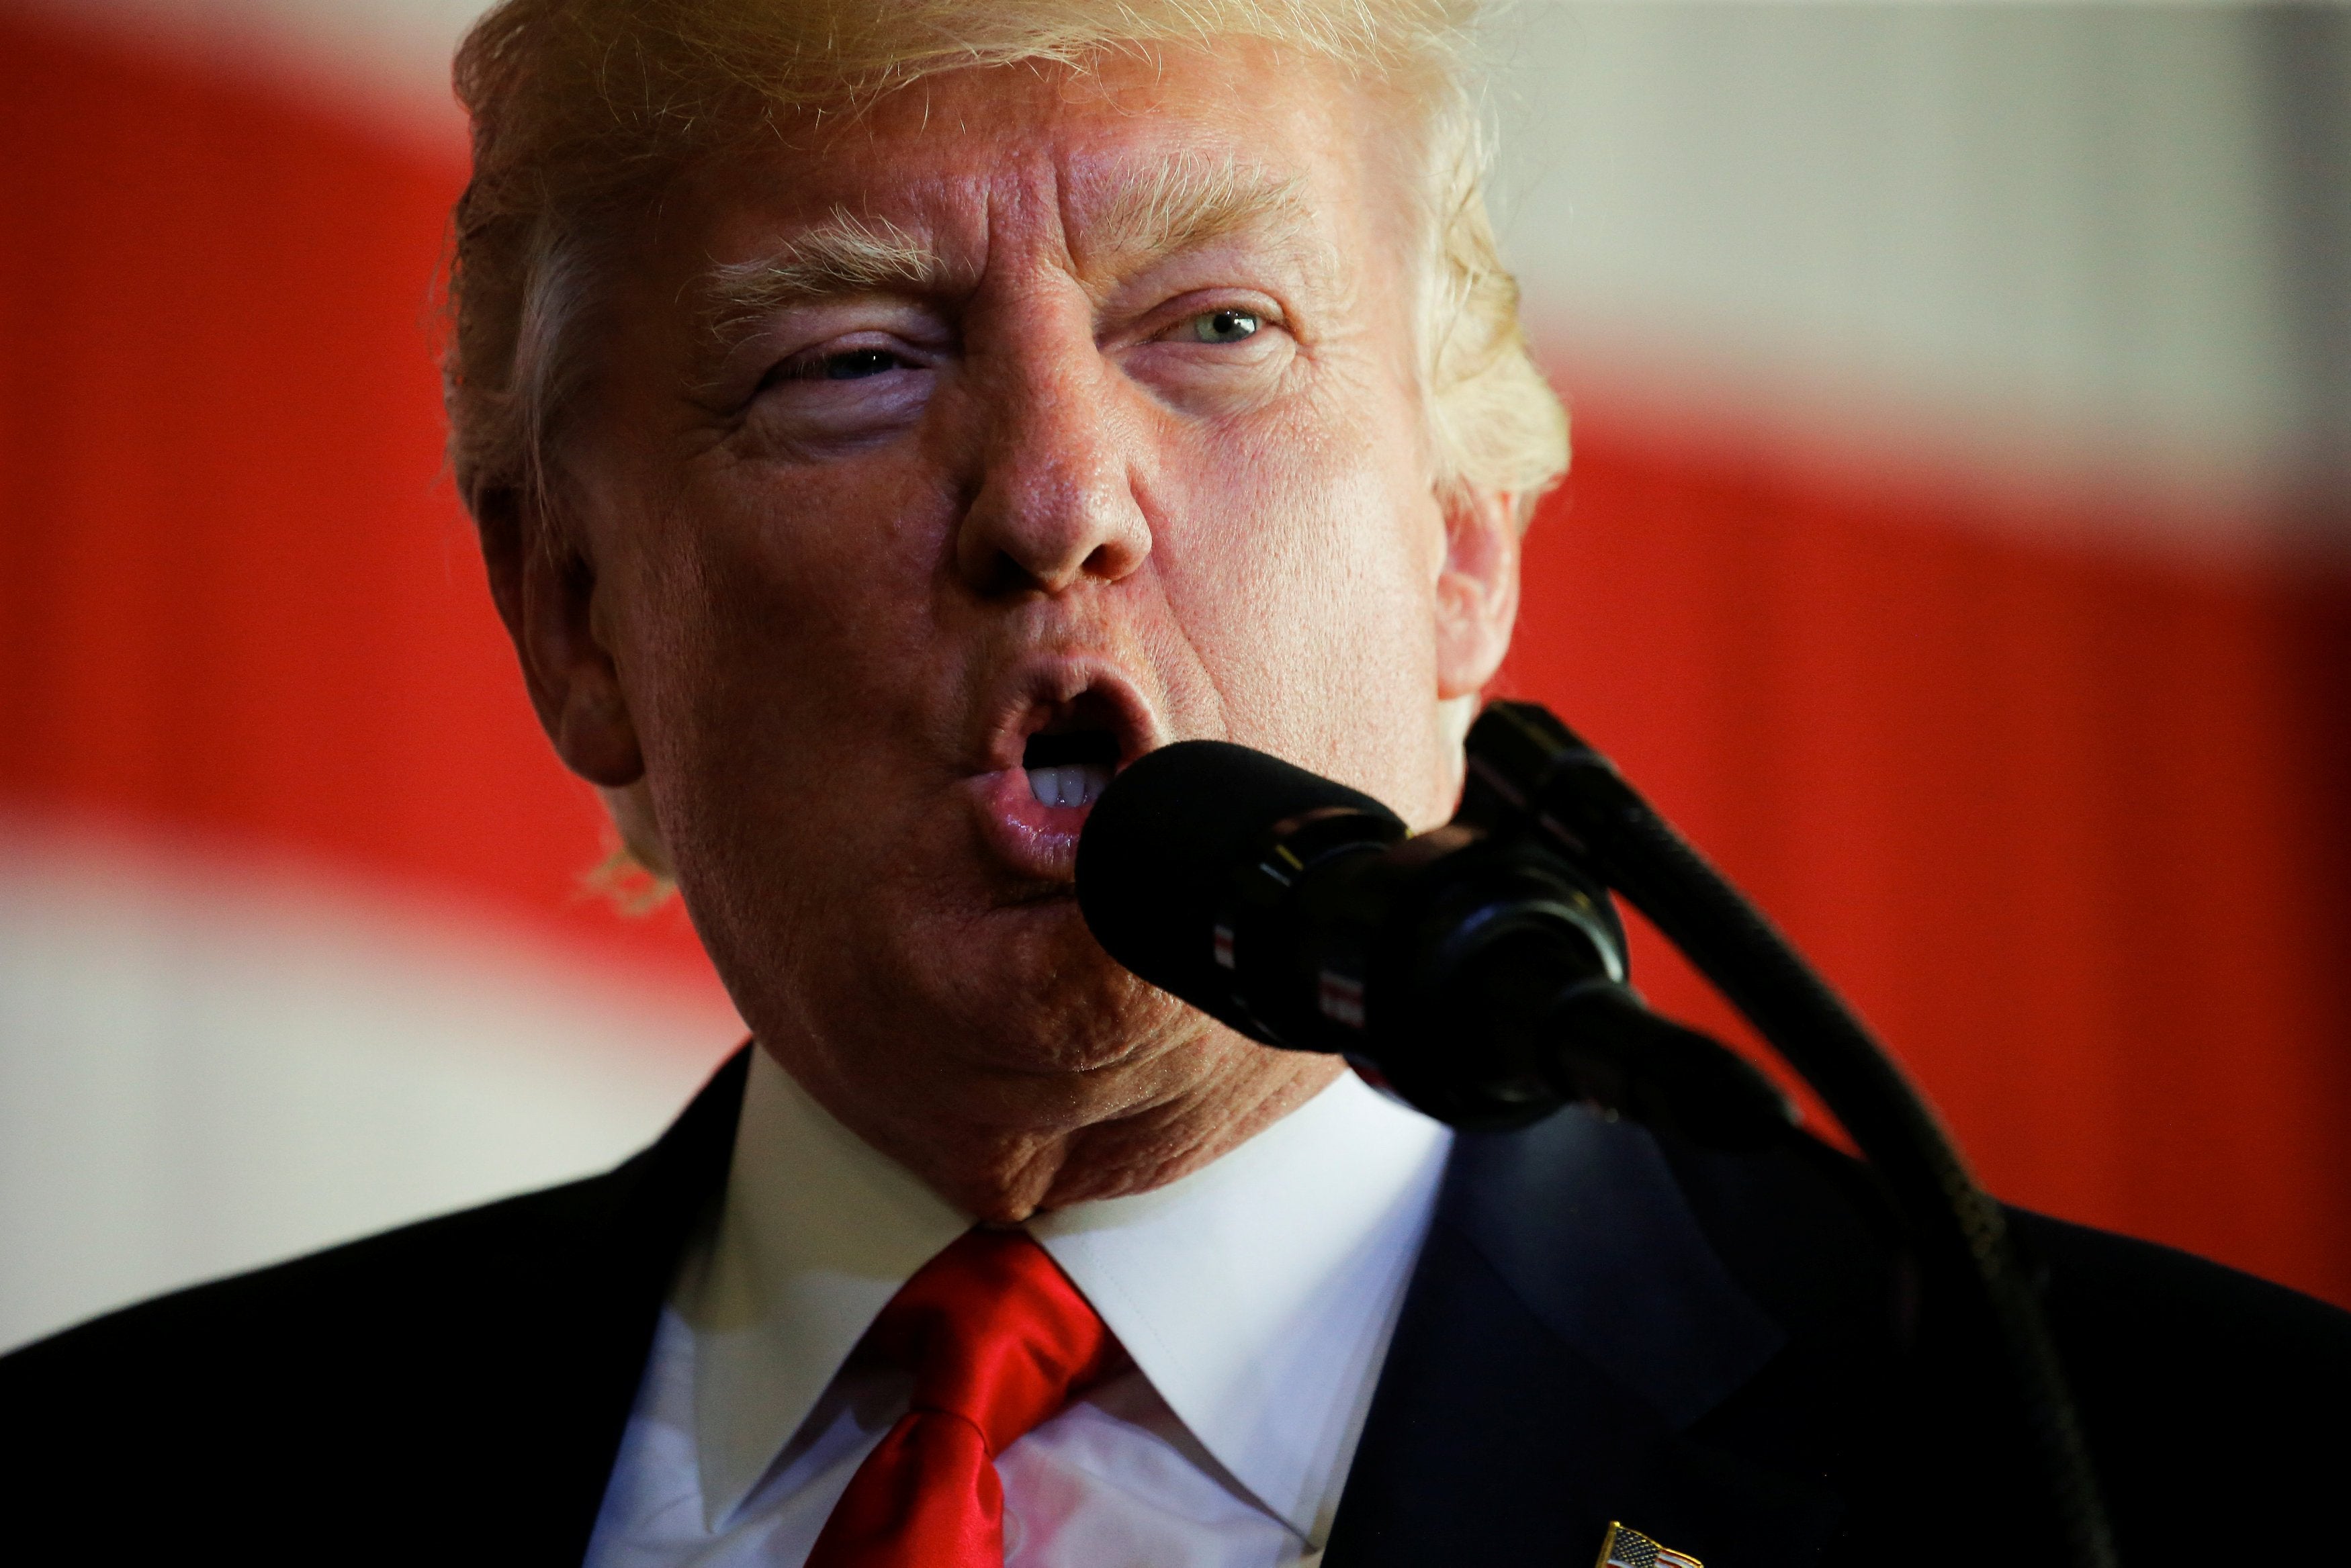 President Trump Calls His First Trip Abroad a 'Home Run'
